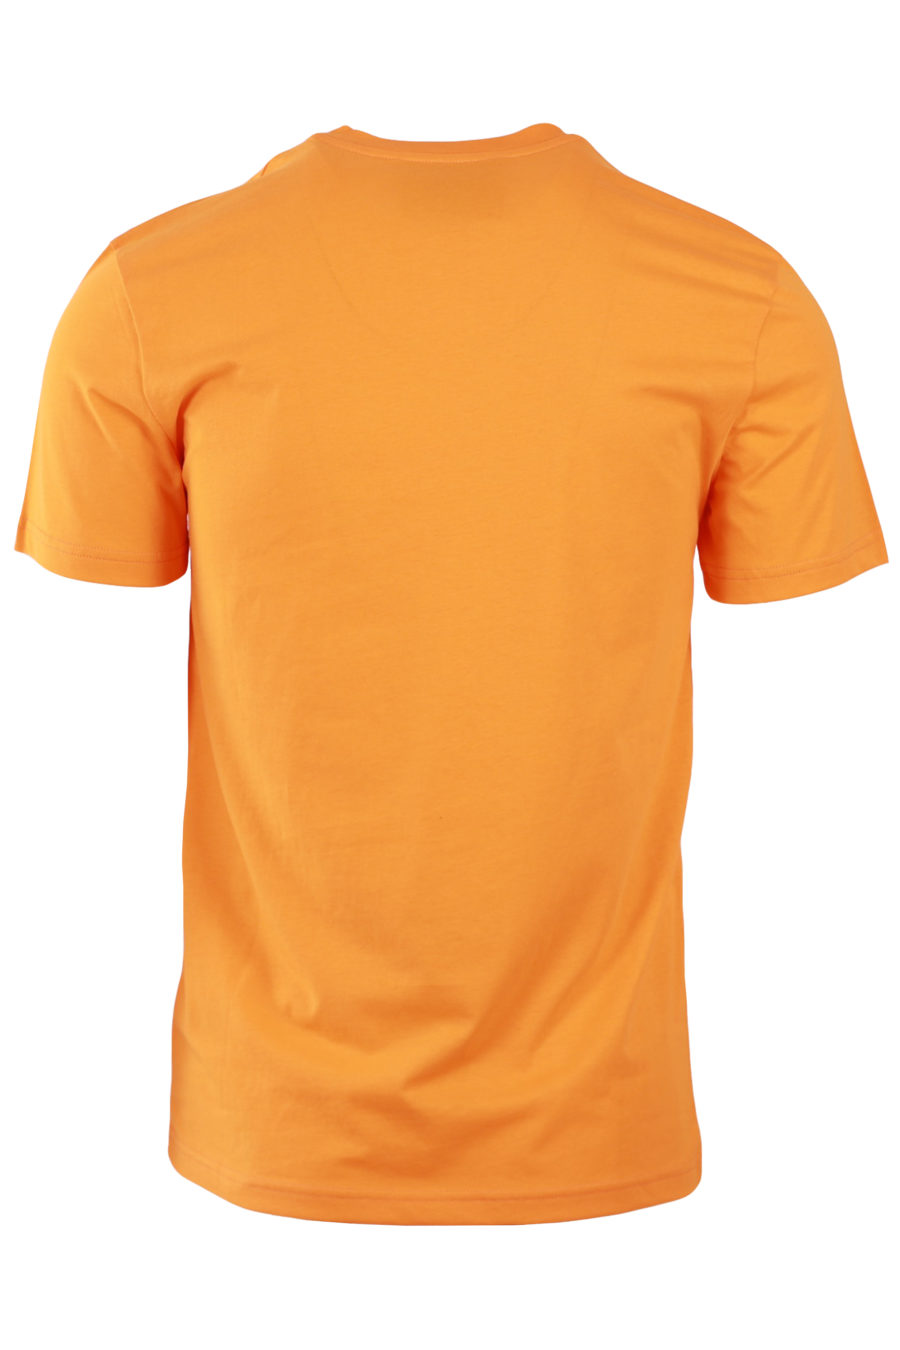 Orange T-shirt with double logo question - 14777291dd33c66642cdd34b46a012b67a0bcfb2